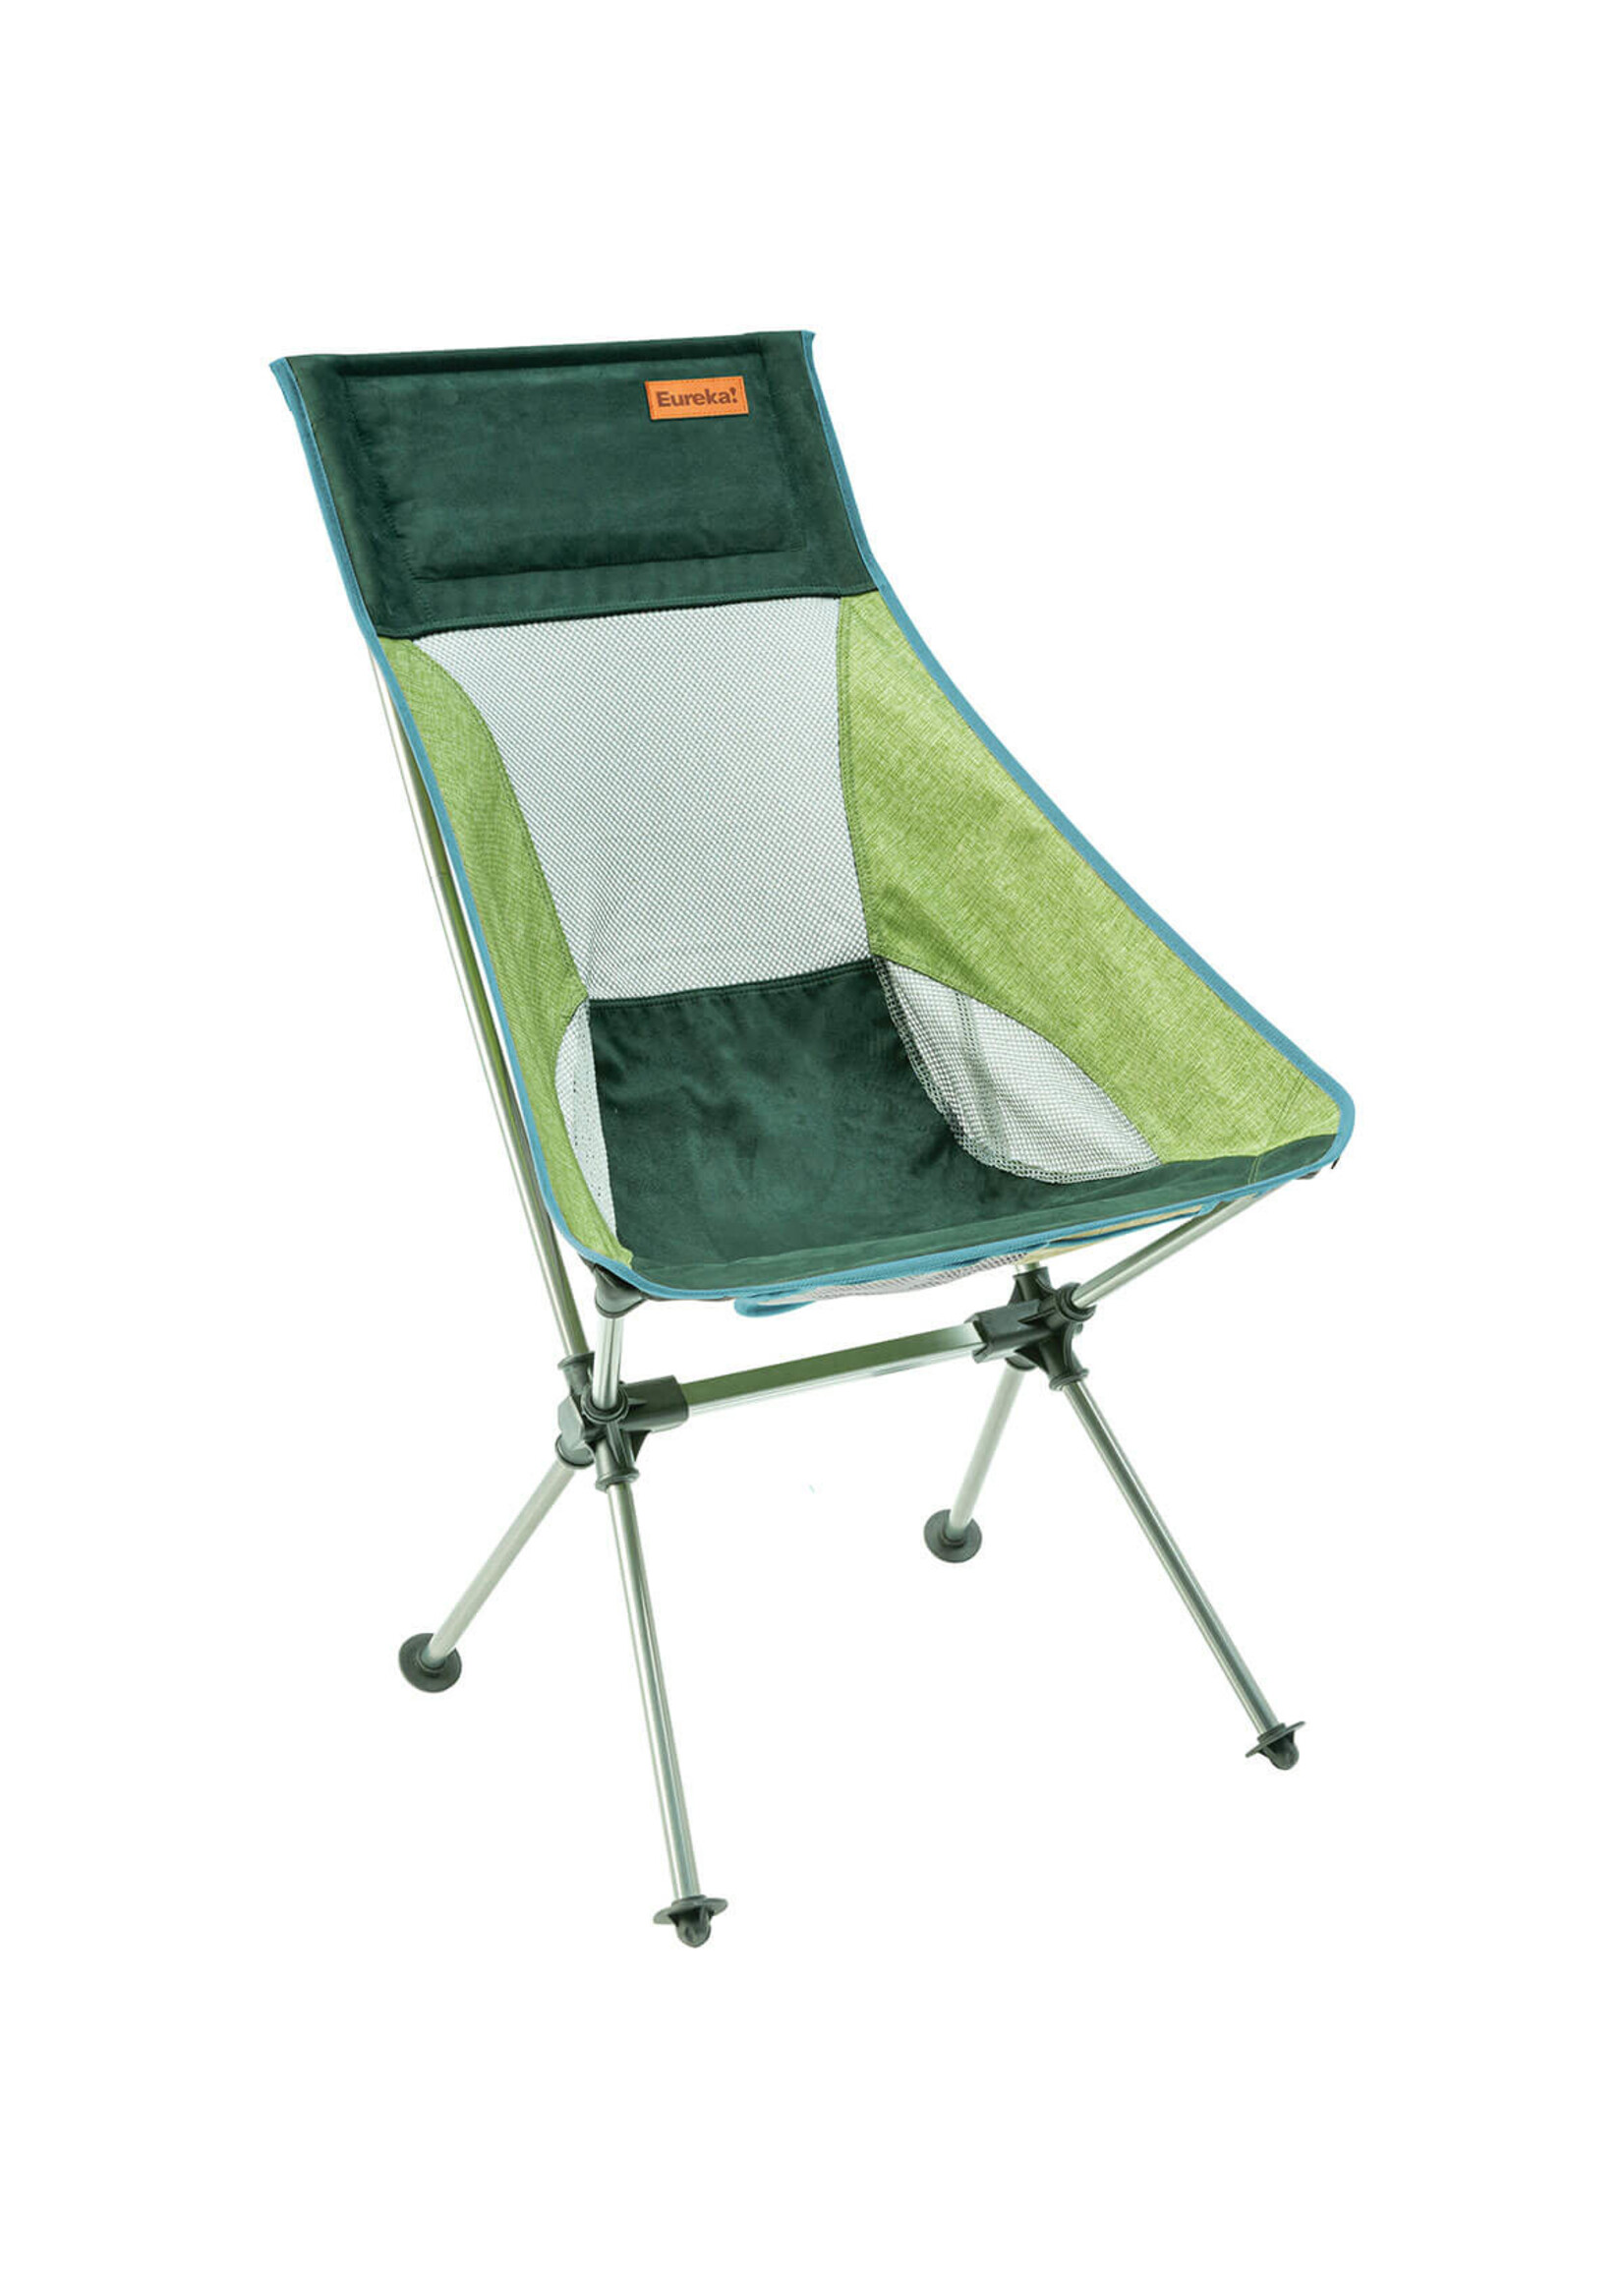 Eureka Tagalong Comfort Camp Chair